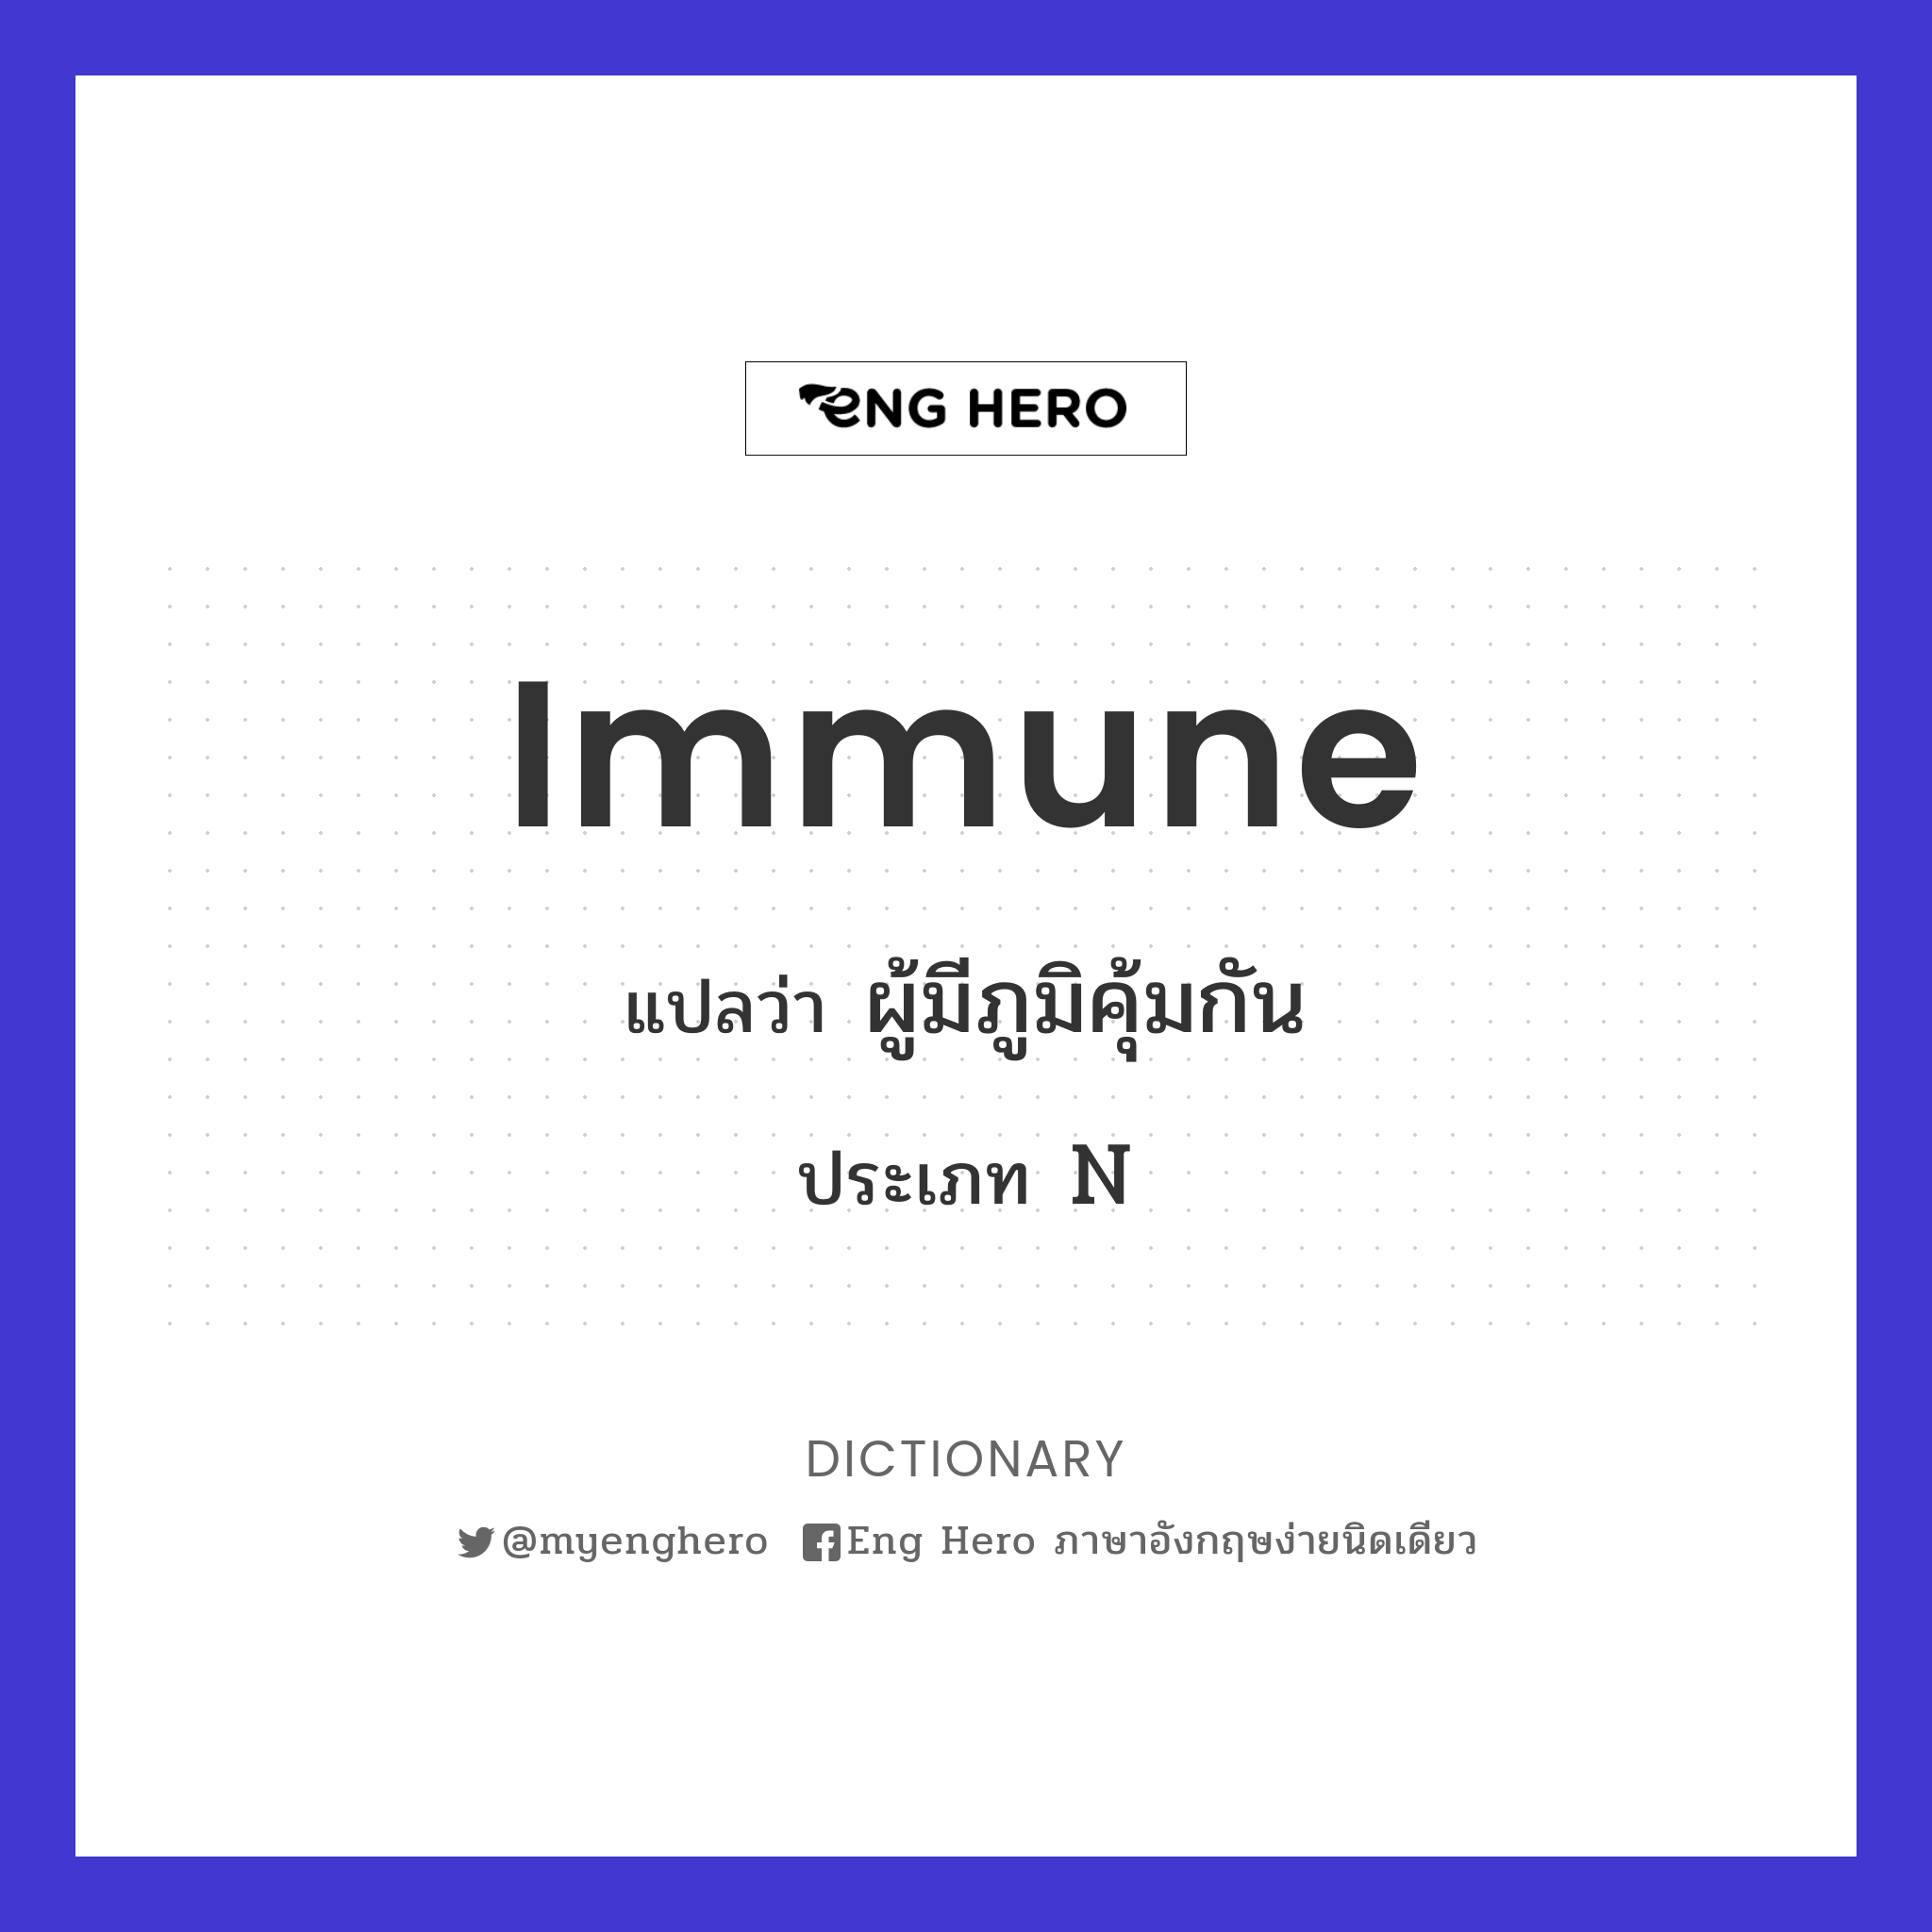 immune